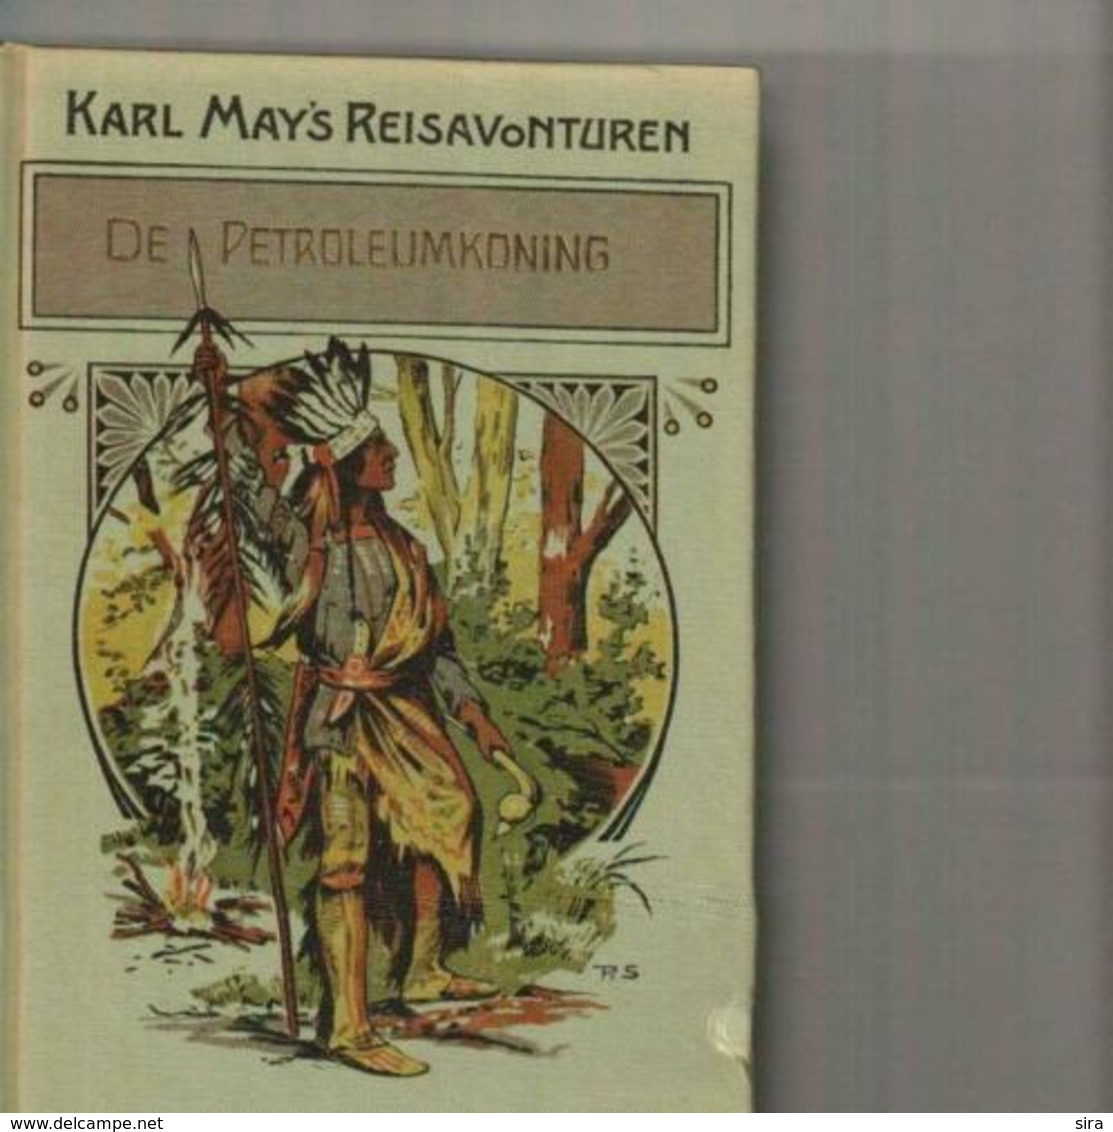 Verzameling 12 boeken Karl May's reisavonturen à 3 Euro/stuk/dec19